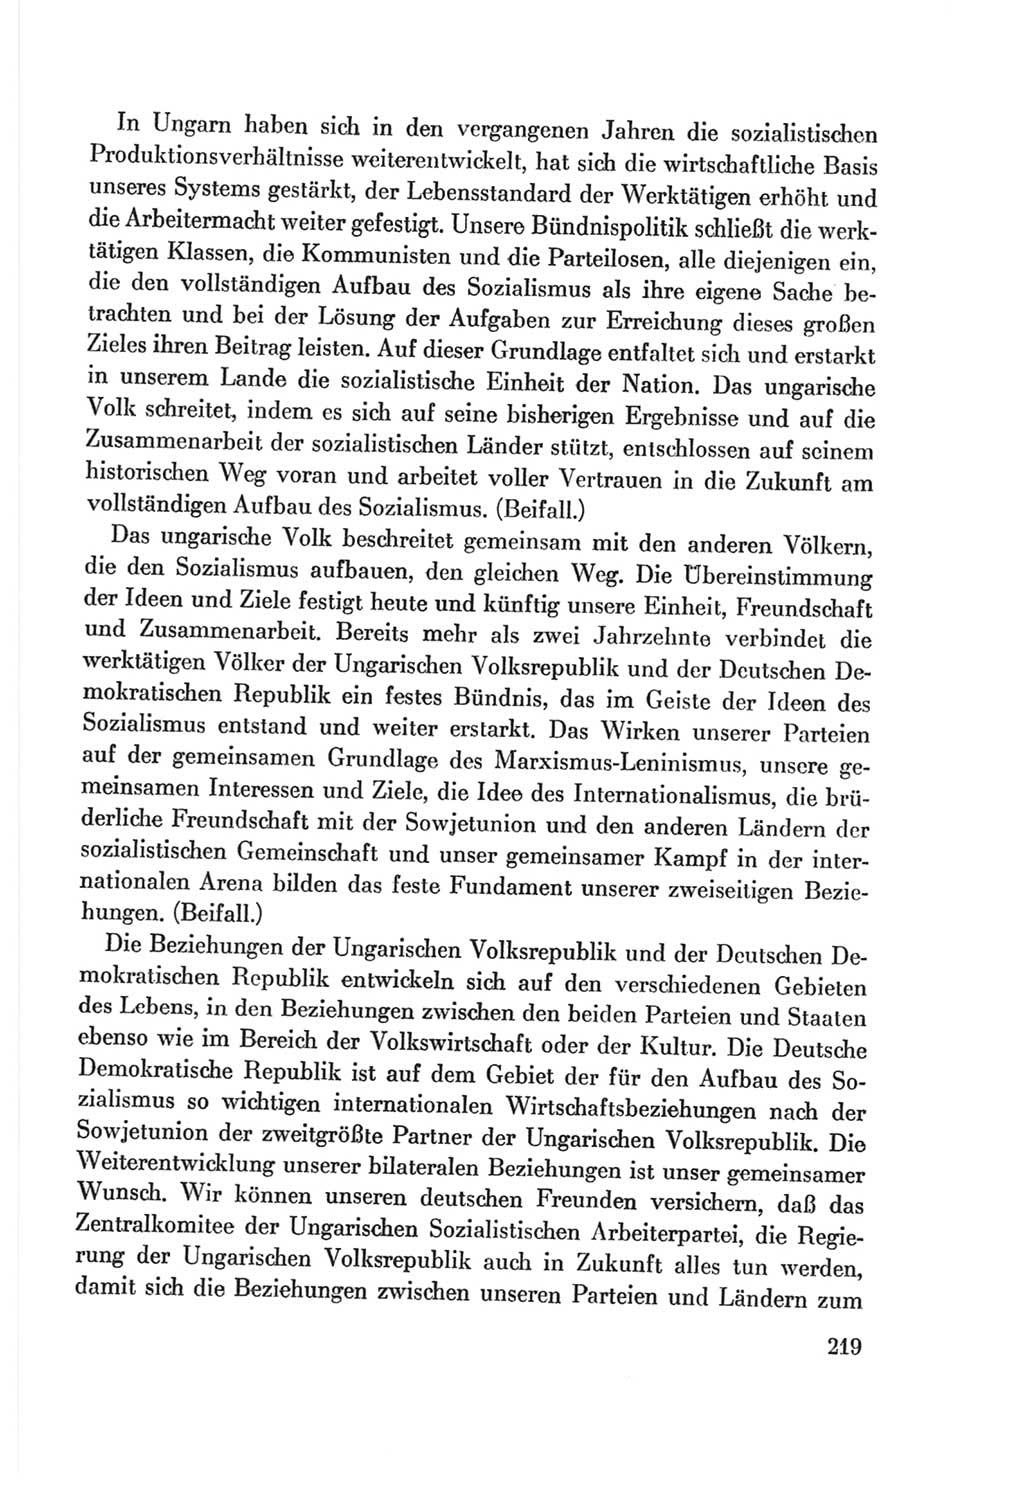 Protokoll der Verhandlungen des Ⅷ. Parteitages der Sozialistischen Einheitspartei Deutschlands (SED) [Deutsche Demokratische Republik (DDR)] 1971, Band 1, Seite 219 (Prot. Verh. Ⅷ. PT SED DDR 1971, Bd. 1, S. 219)